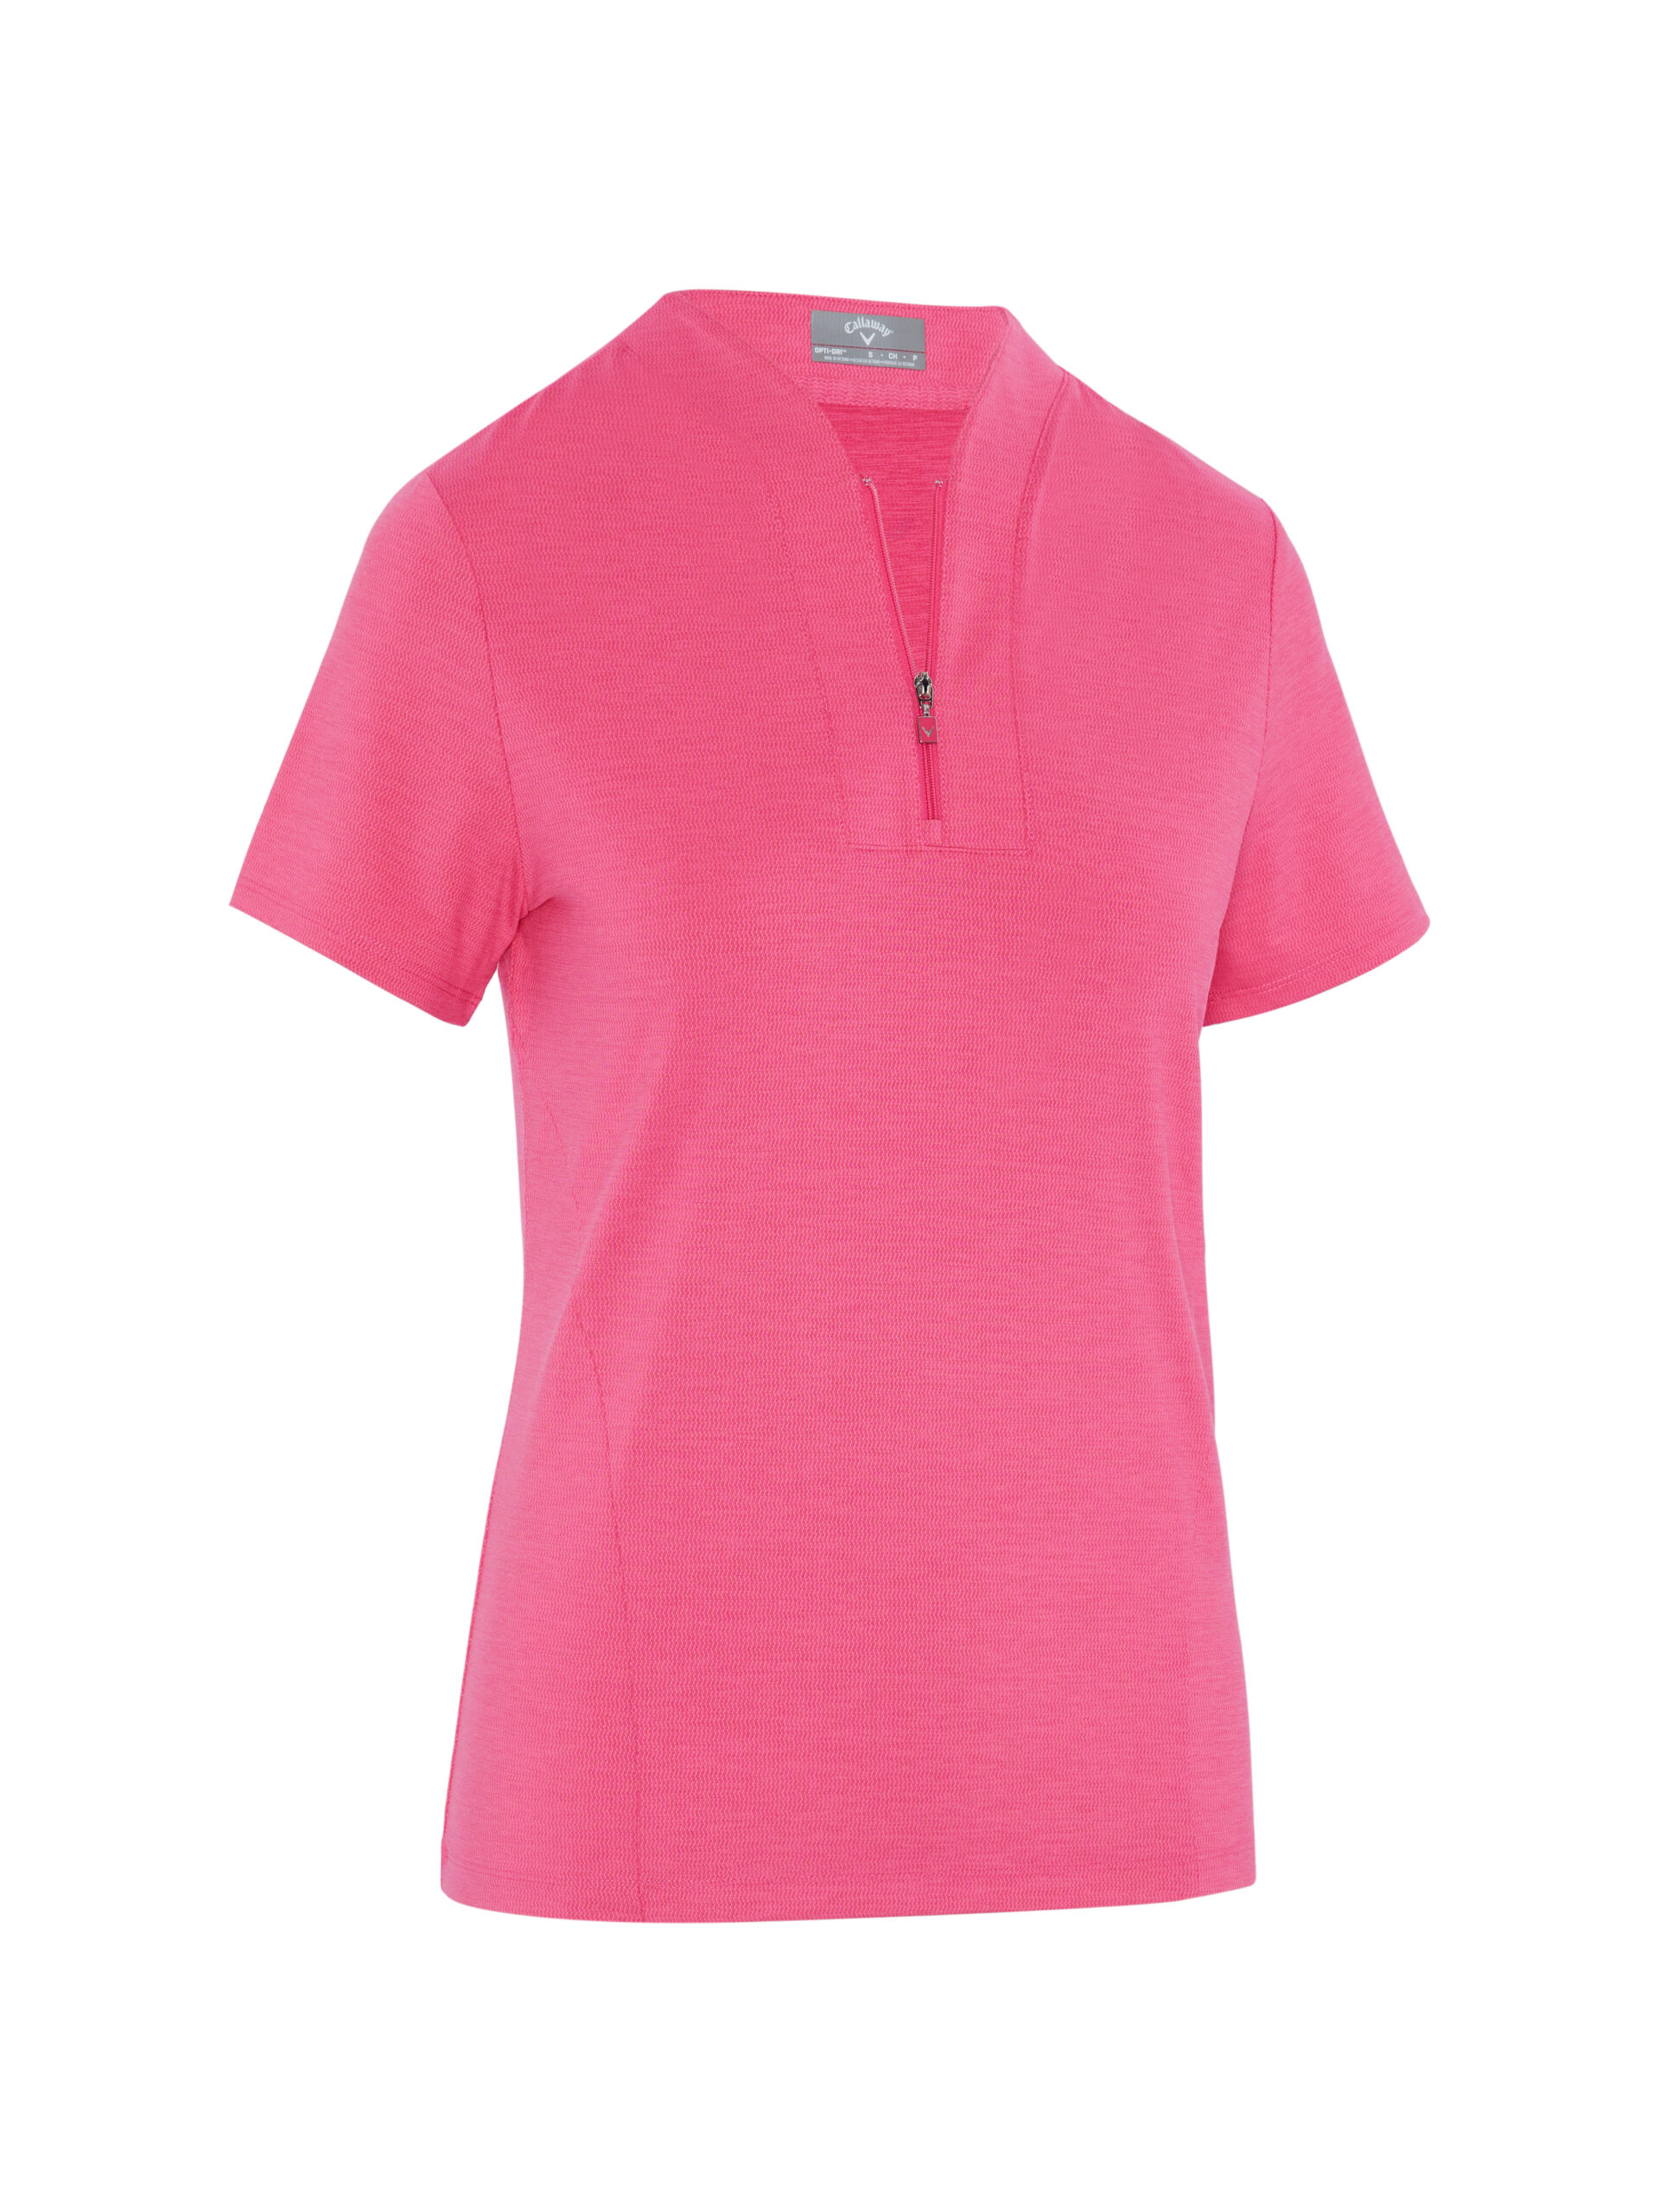 Callaway Tonal Heather dámské golfové triko, růžové